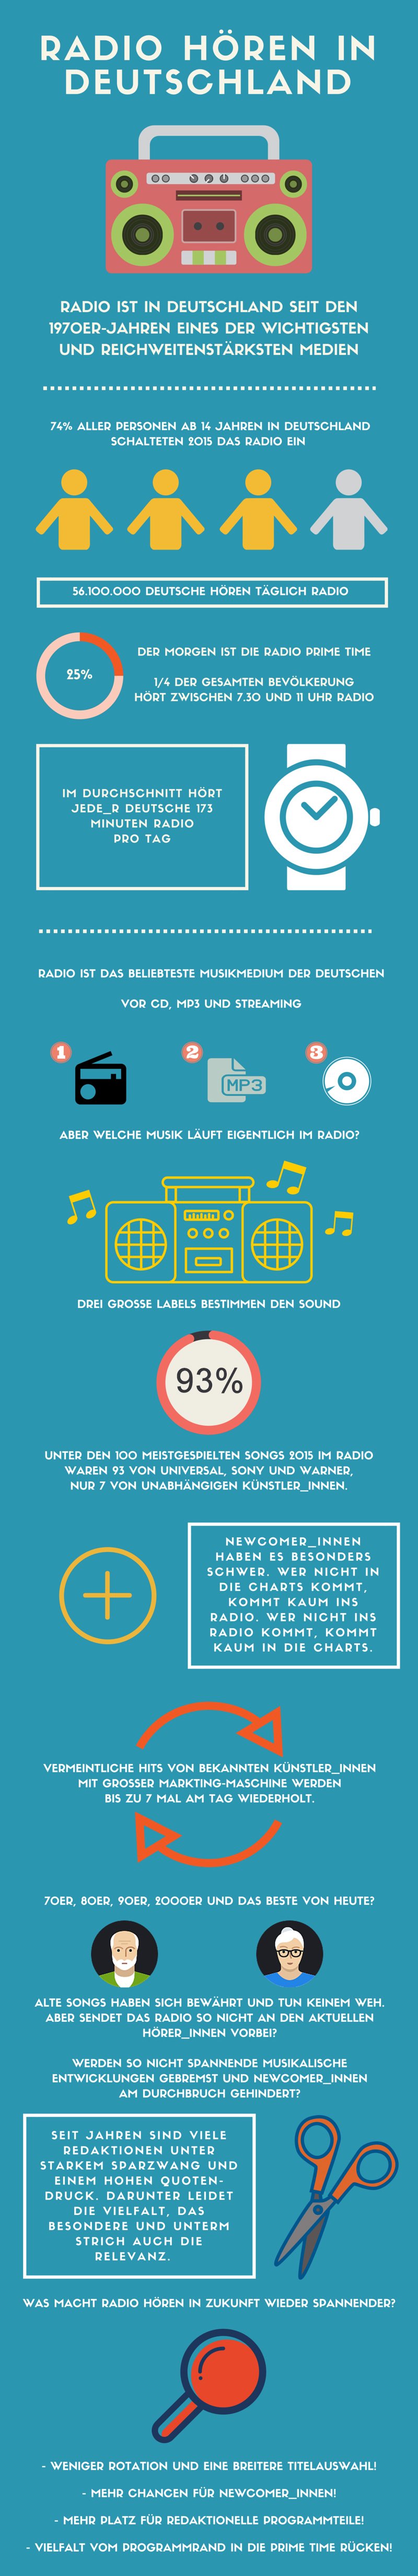 Radio_hören_in_Deutschland_Infografik